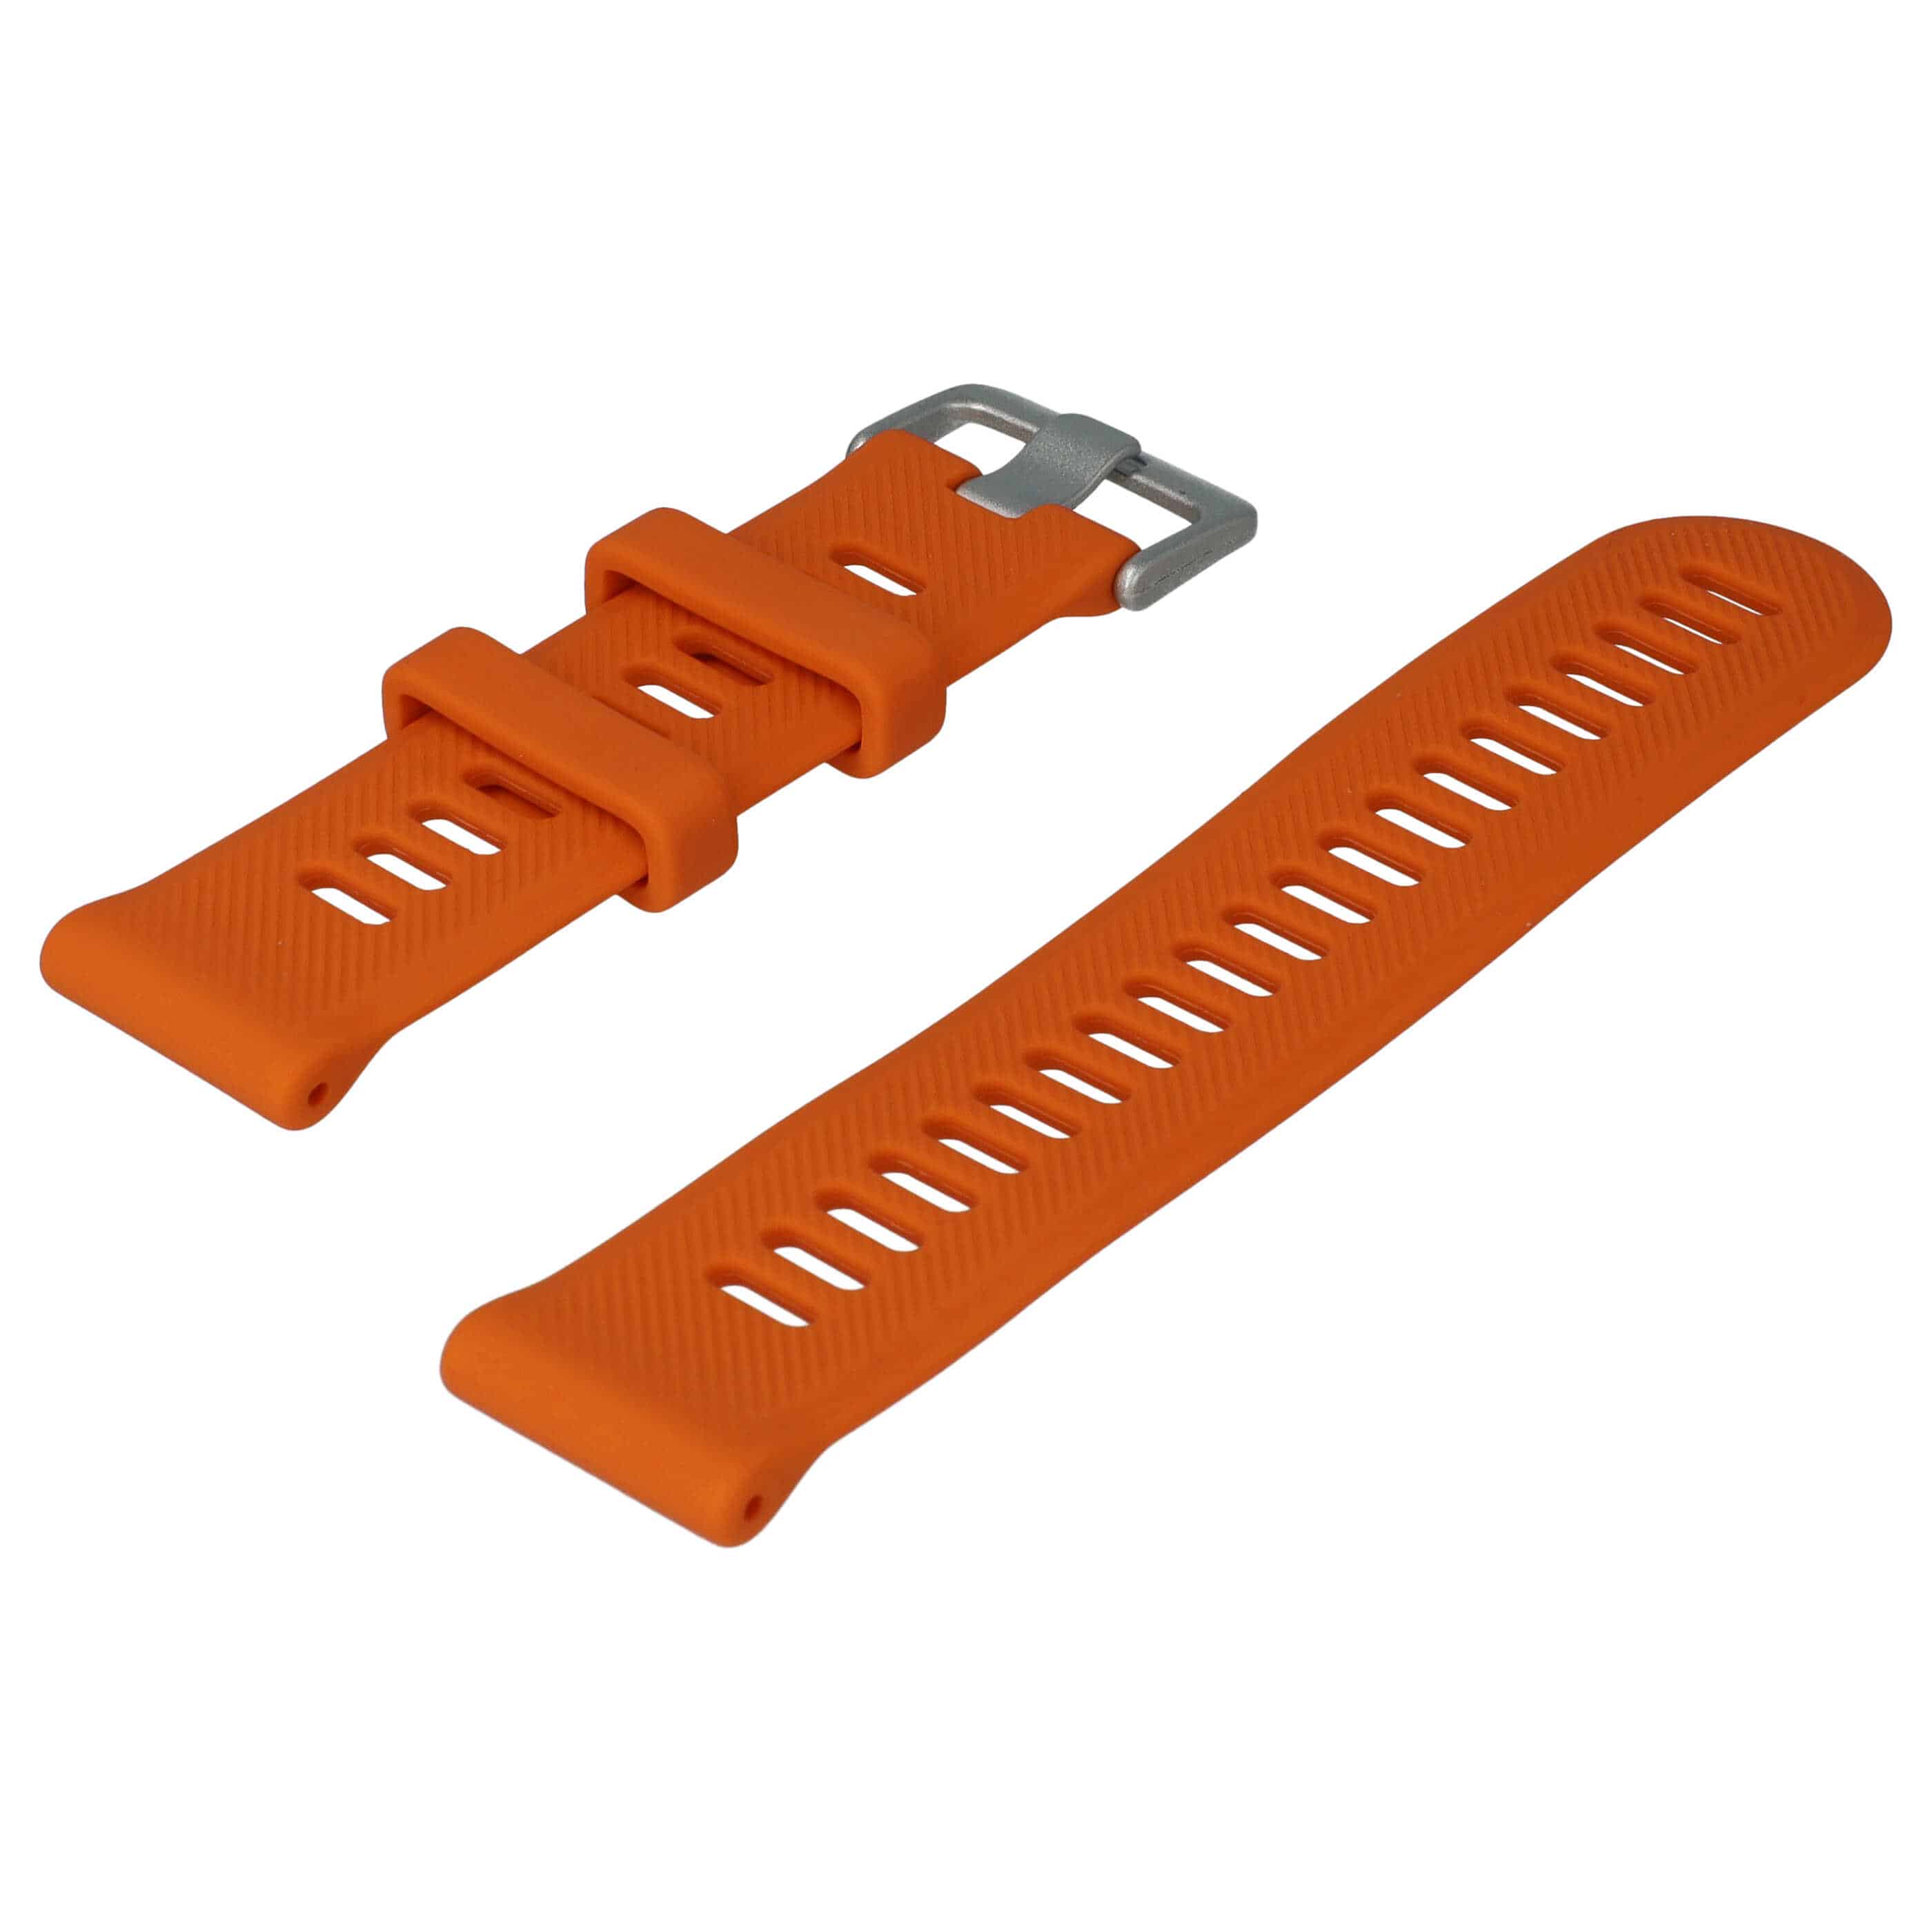 Armband für Garmin Forerunner Smartwatch - 9 + 12,2 cm lang, 22mm breit, Silikon, orange